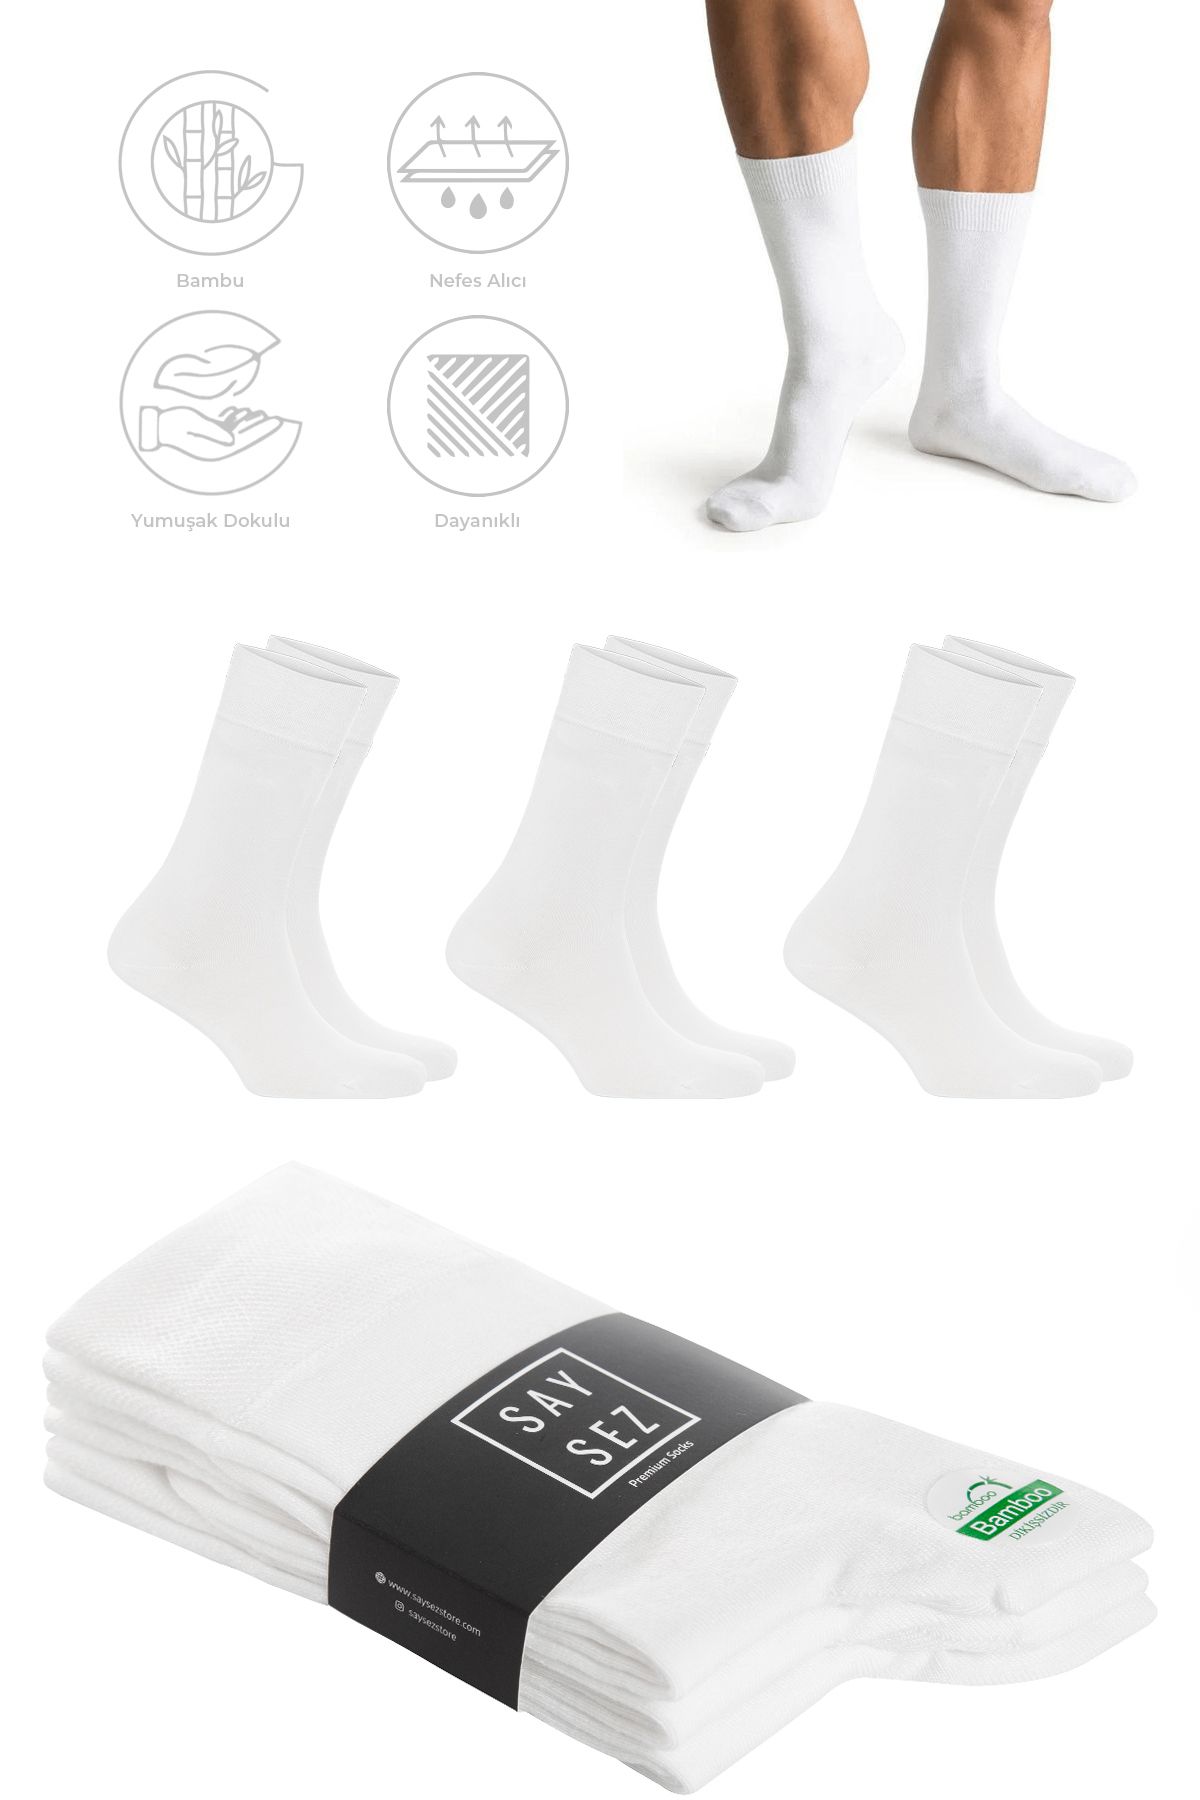 SAYSEZ Bambu Erkek Soket Uzun Düz Beyaz Renk Çorap Dikişsiz Premium Paket 3'lü / Yıkamalı Kokulu Soft Çorap